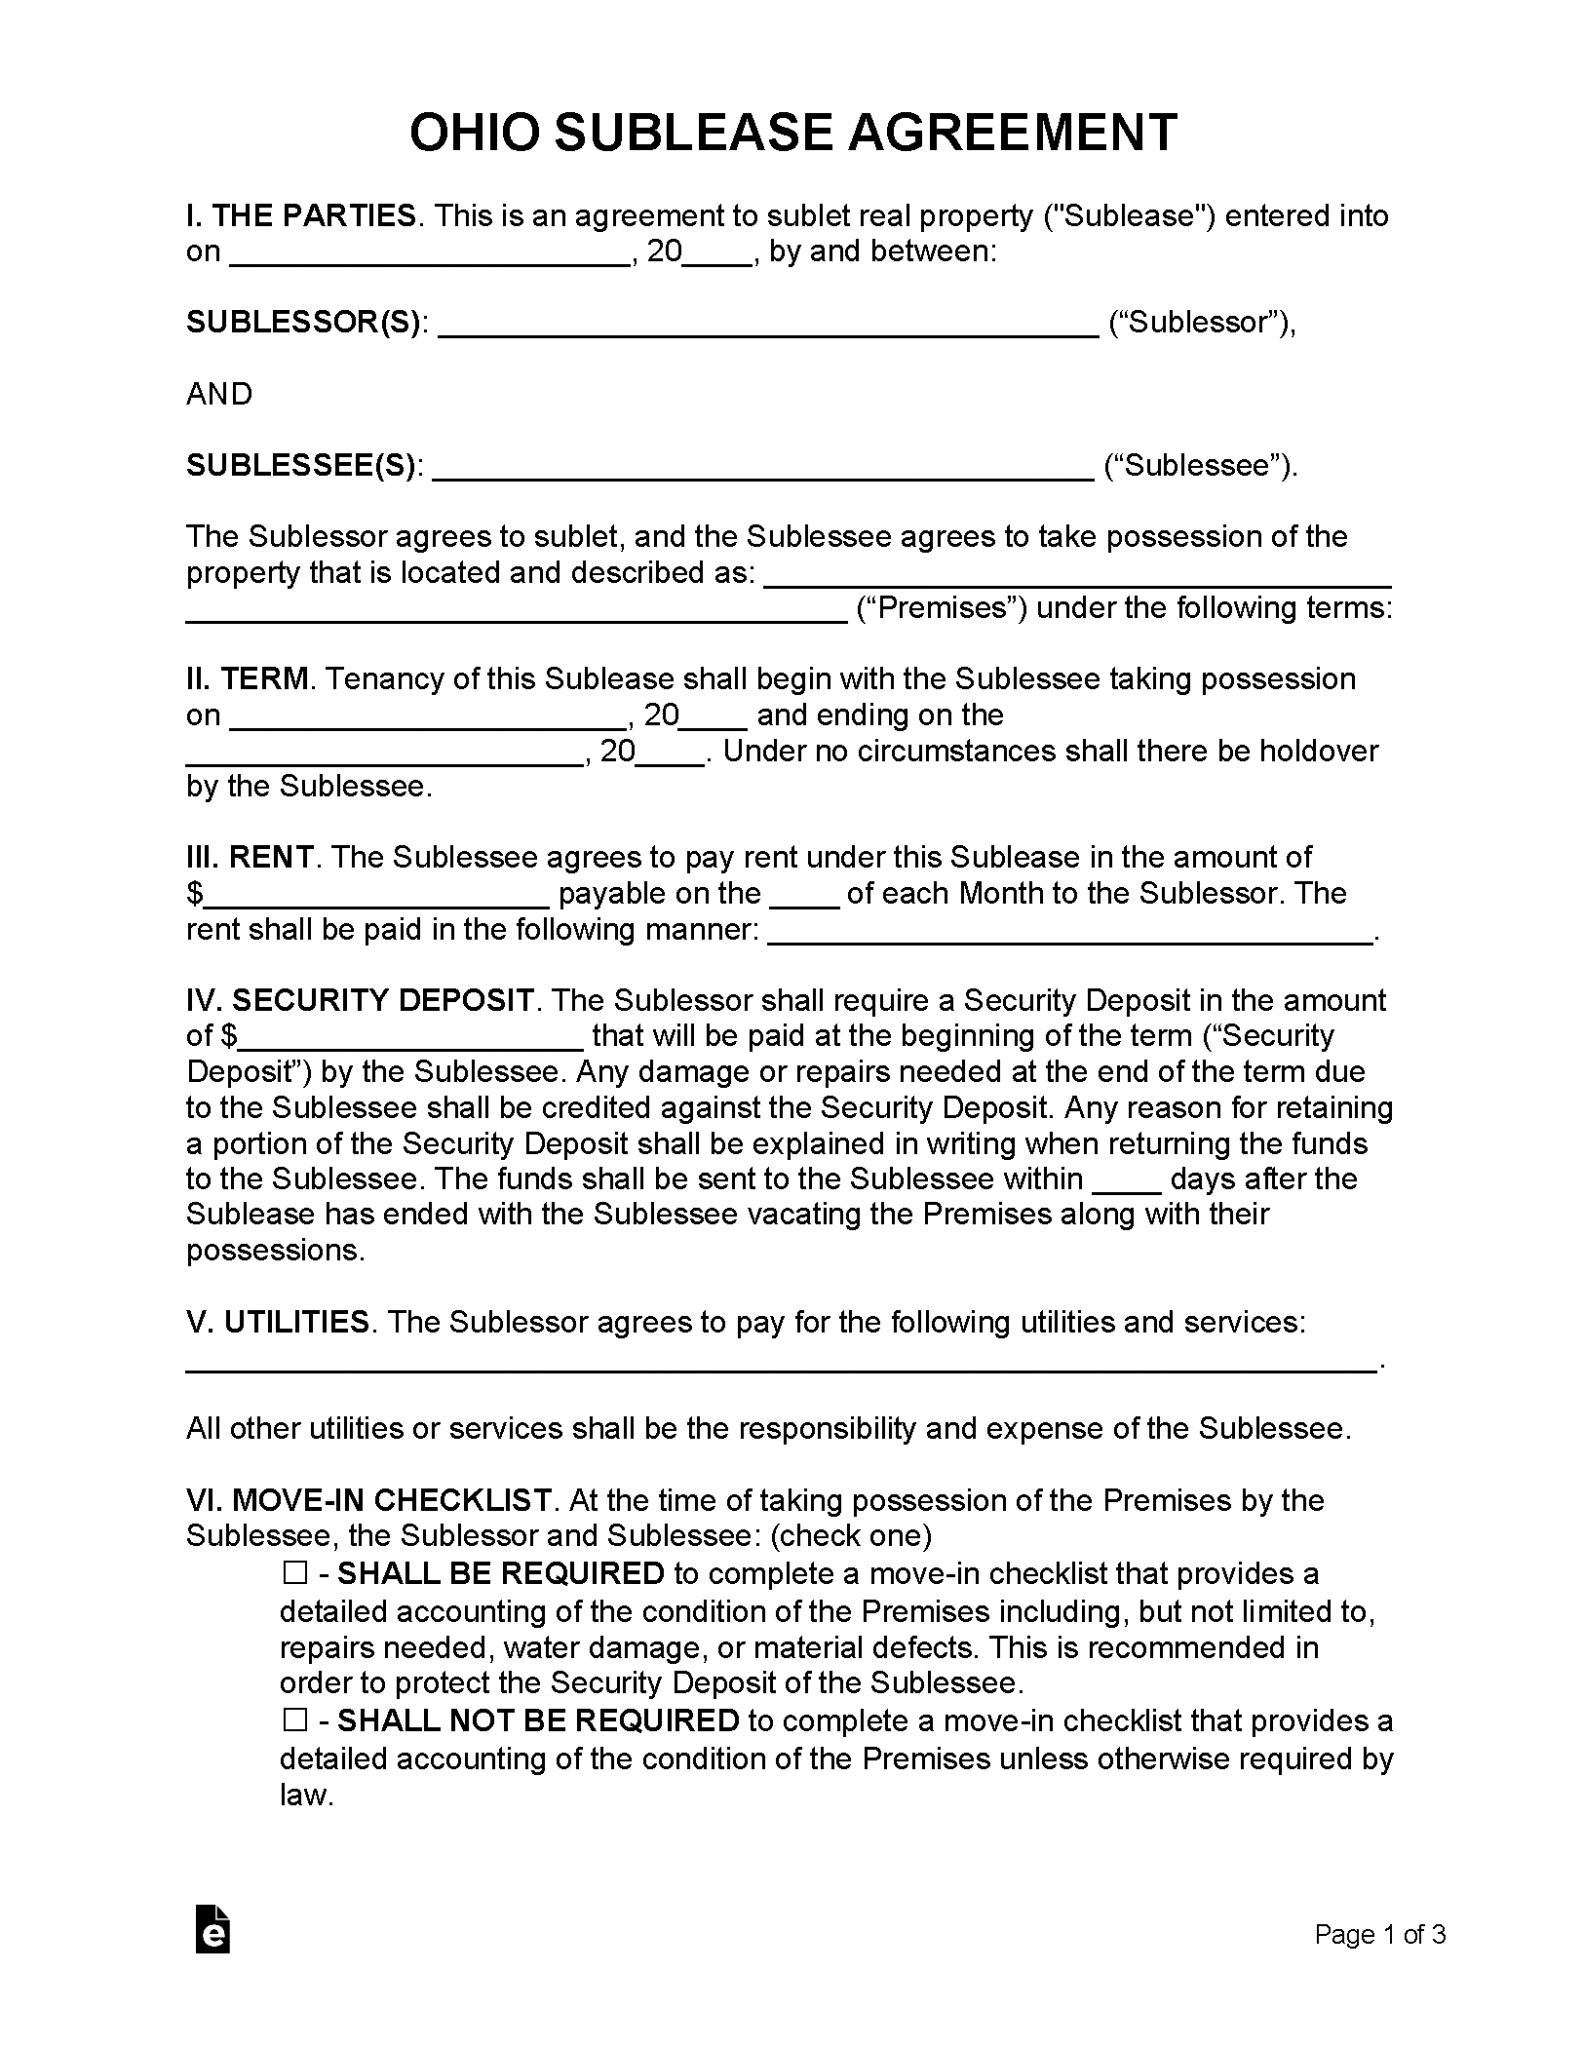 free-ohio-lease-agreement-templates-6-pdf-word-rtf